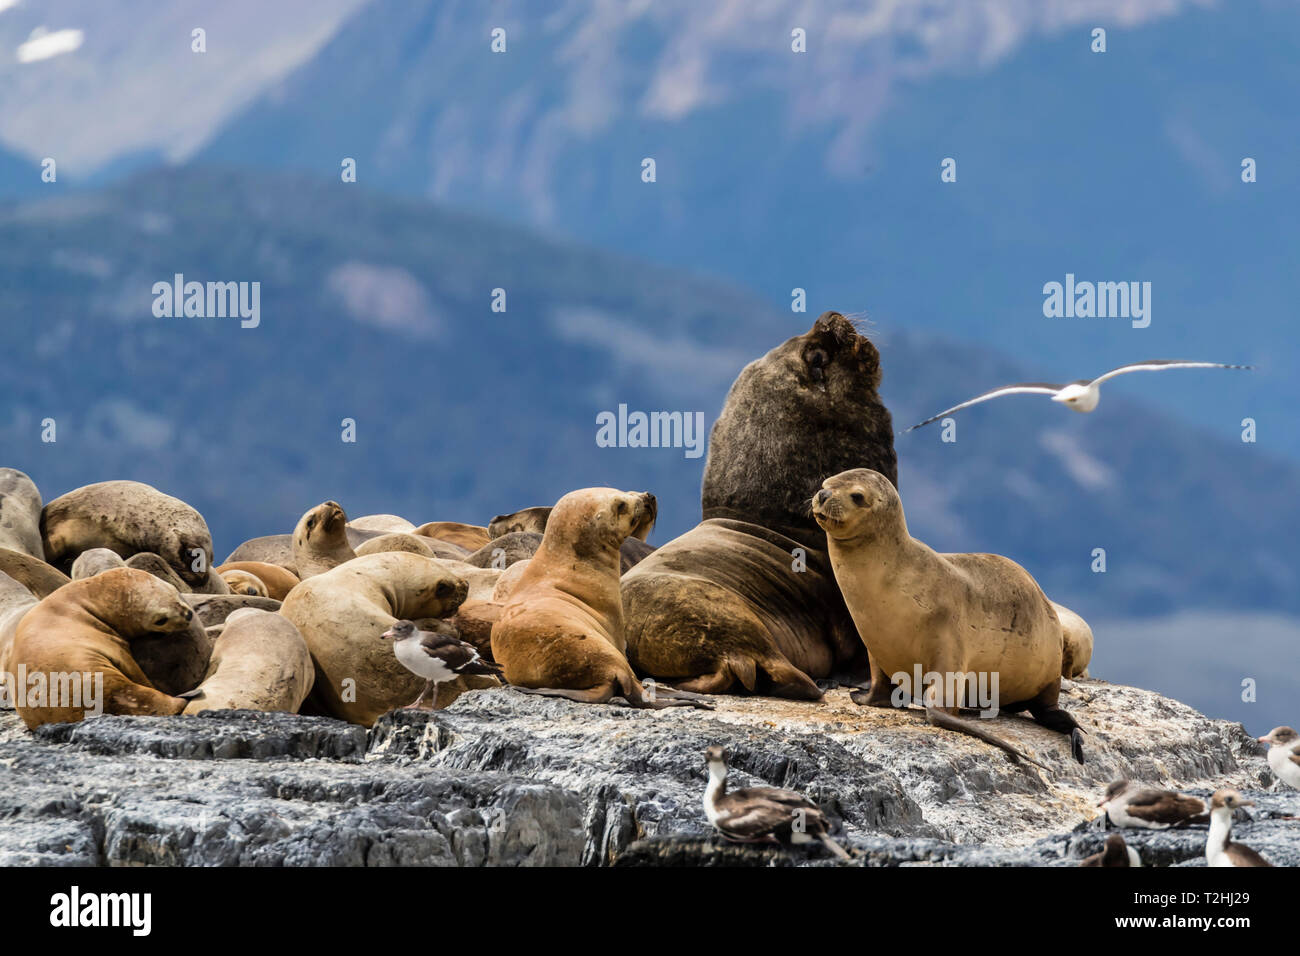 Les lions de mer d'Amérique du sud, Otaria flavescens, sur un petit îlot dans le canal de Beagle, Ushuaia, Argentine, Amérique du Sud Banque D'Images